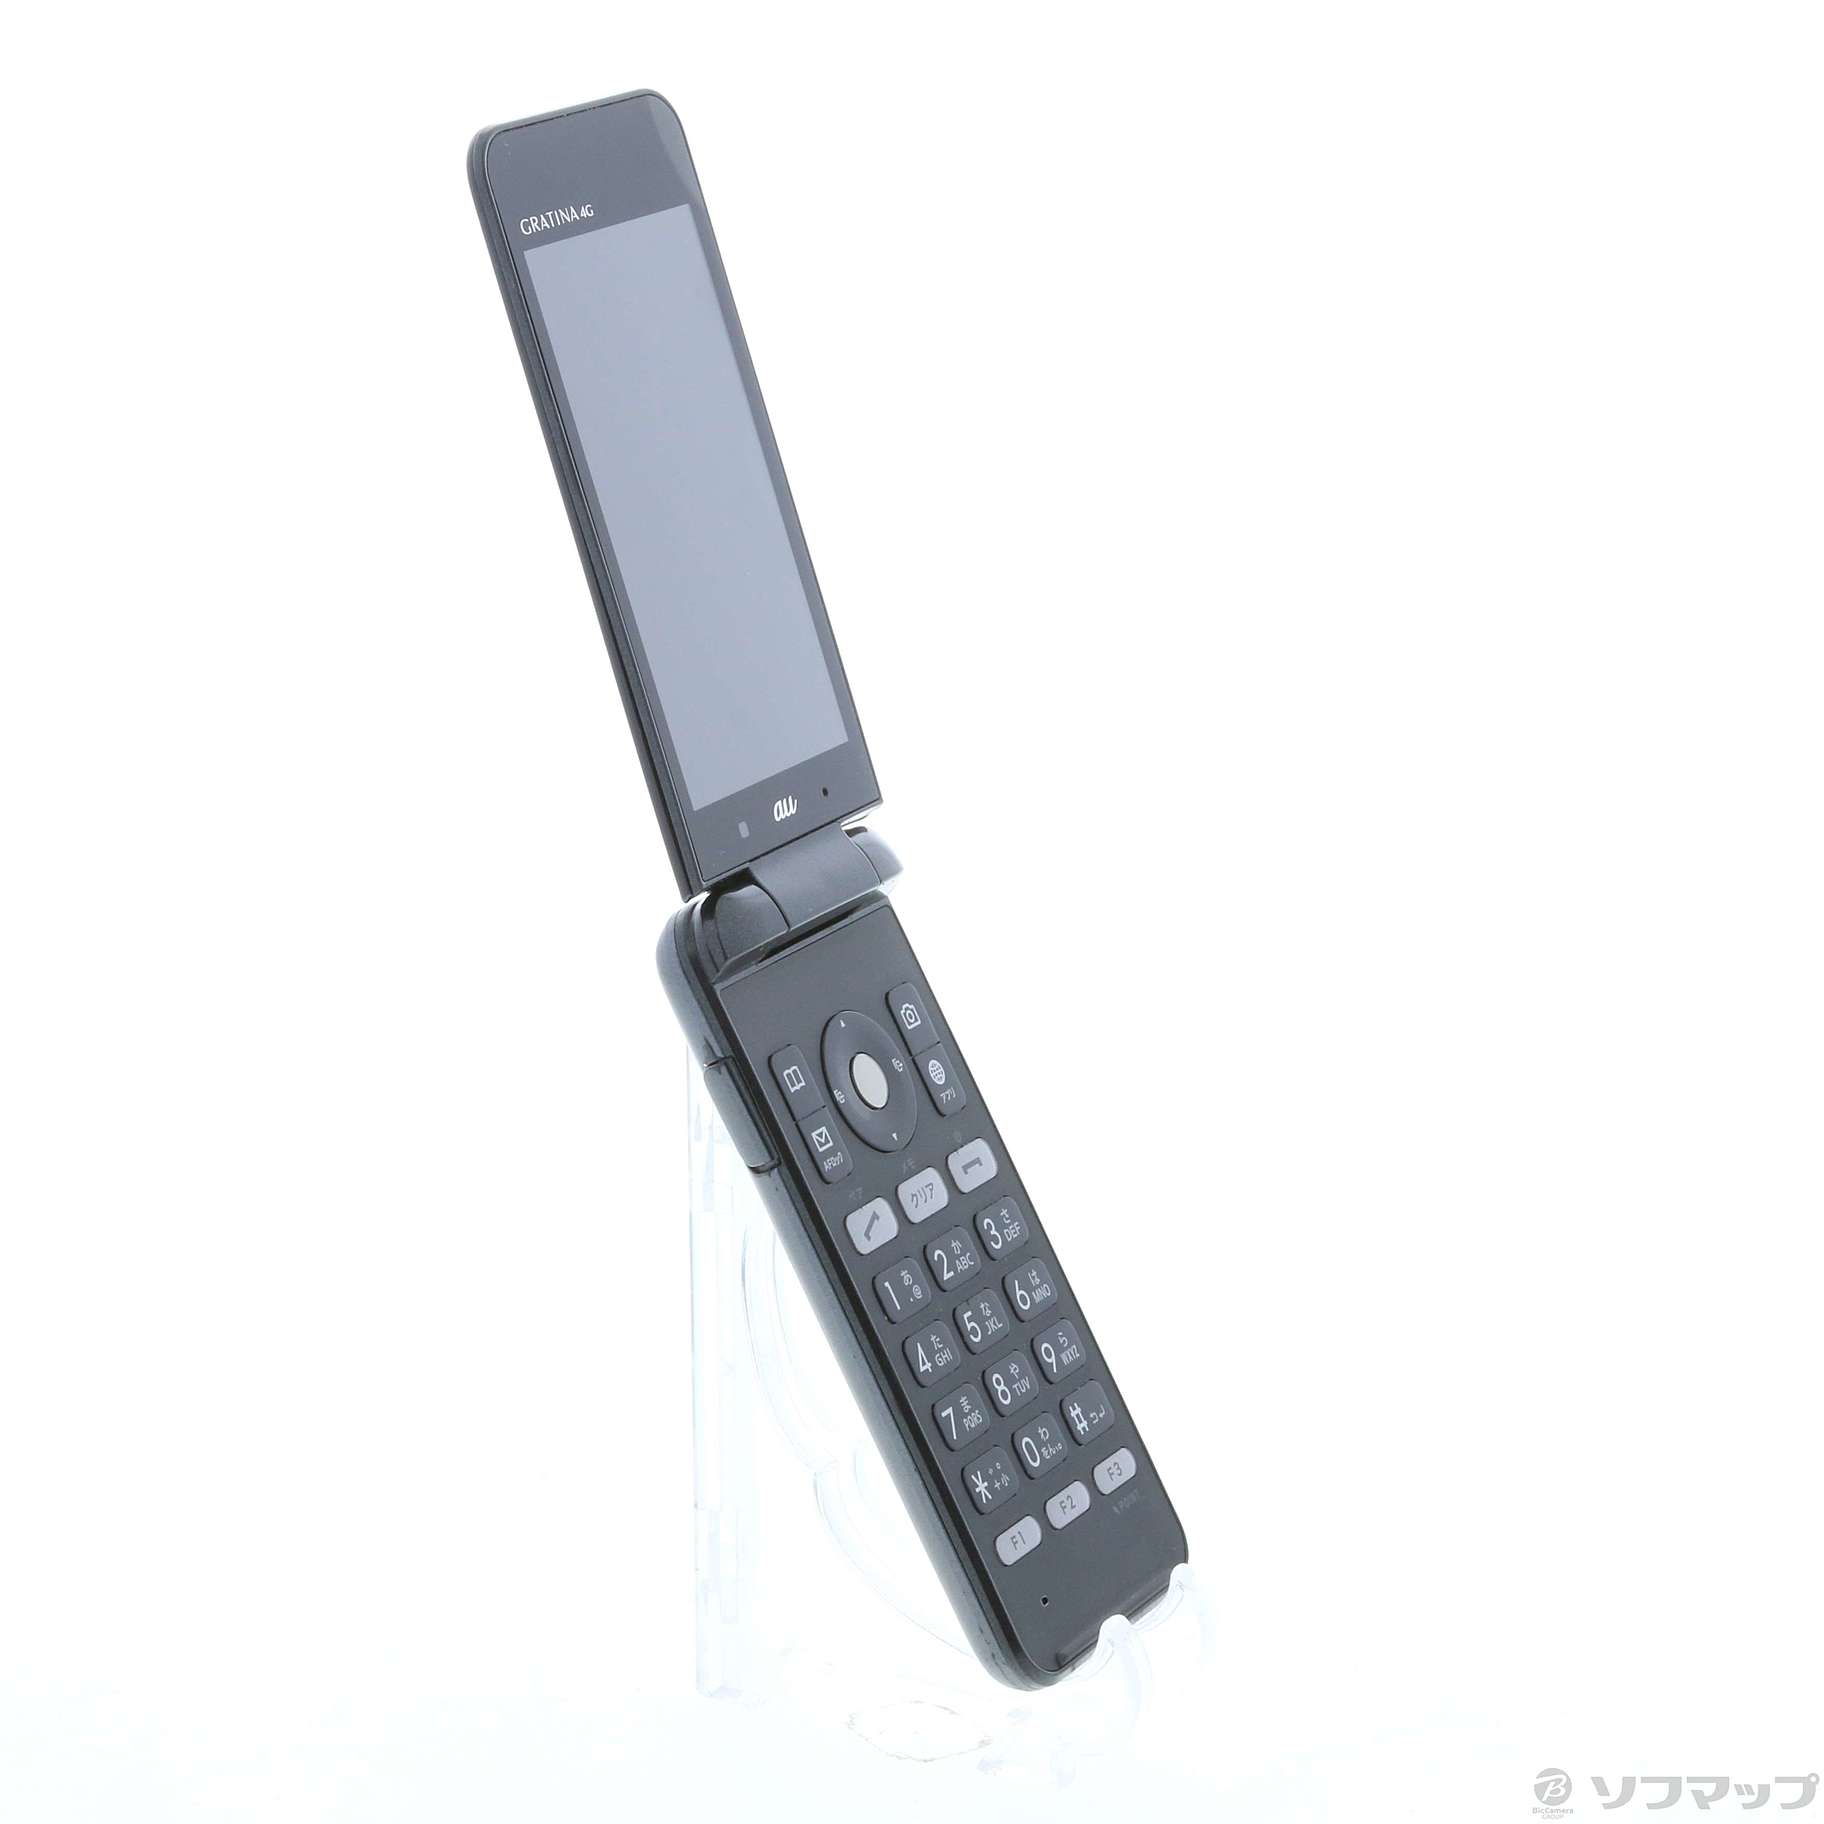 京セラauガラケー GRATINA 4G KYF31 - 携帯電話